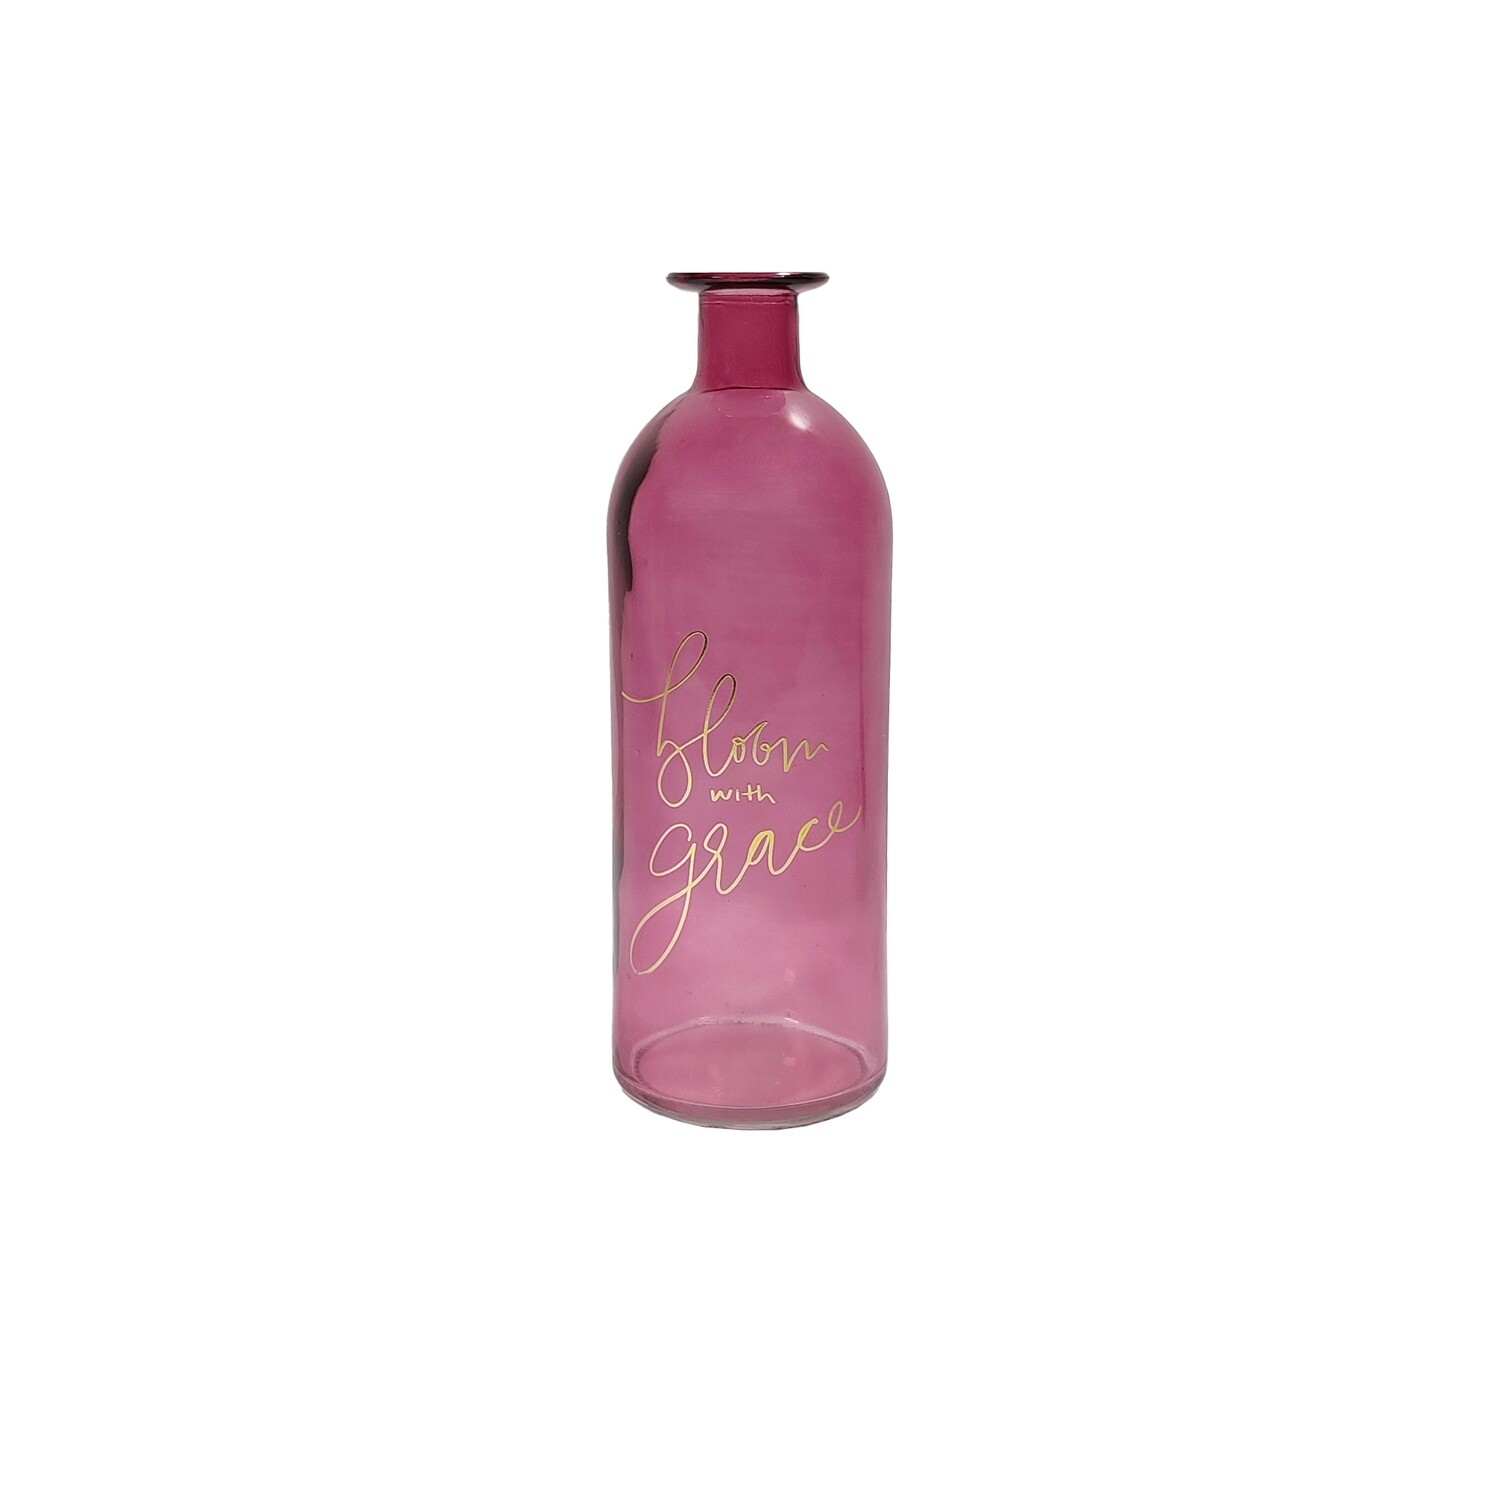 Glass Bottle 9x27cm - Dark Pink